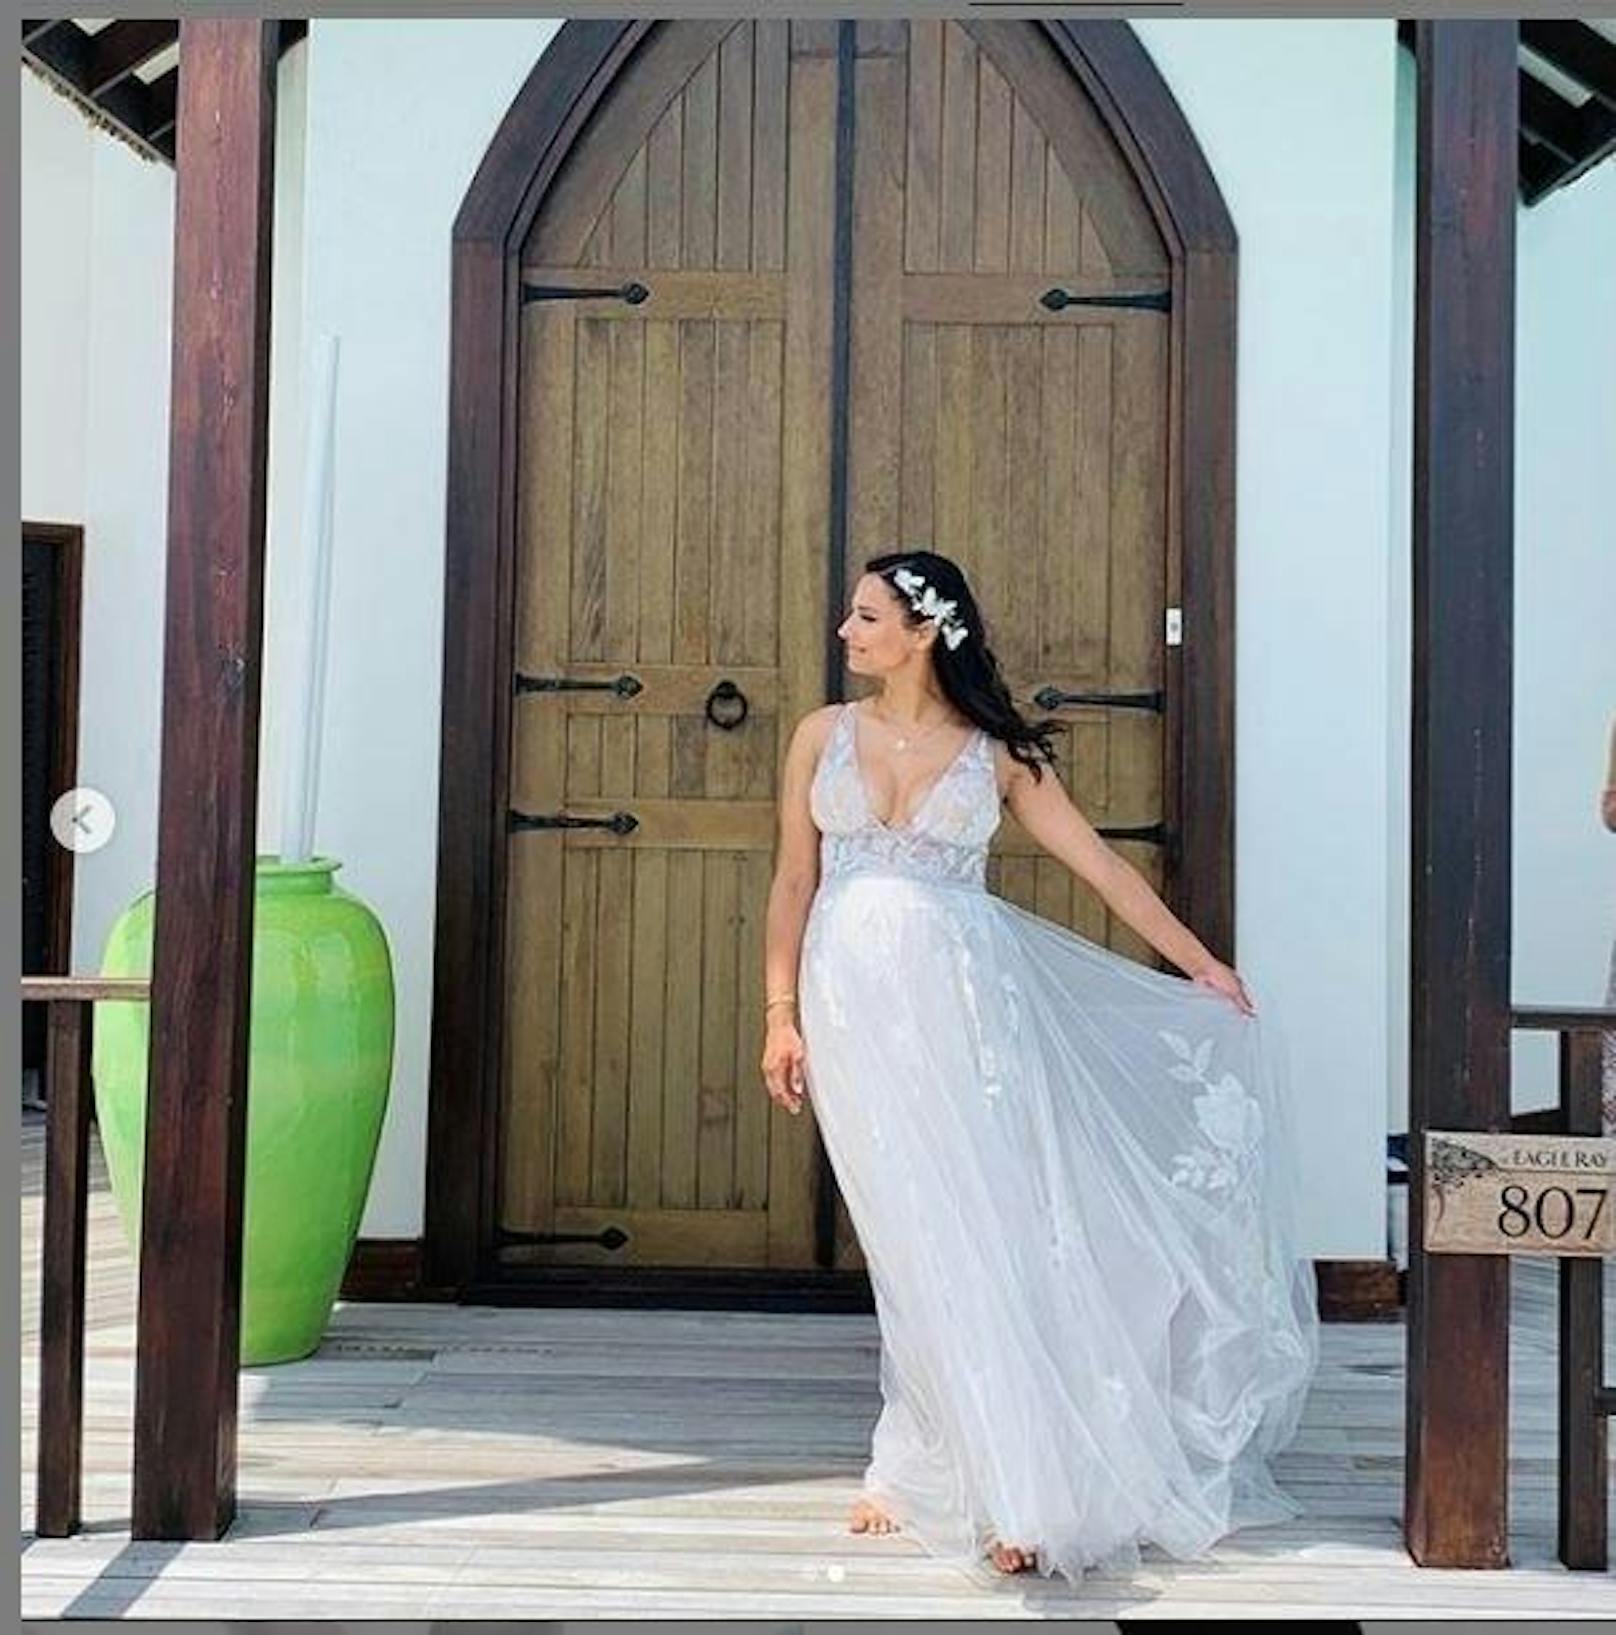 20.10.2019: Oliver Pocher und Amira Aly haben sich auf den Malediven abseits der Öffentlichkeit das Ja-Wort gegeben. Die Braut zeigte sich auf Instagram in einem wunderschönen Kleid, klassische Bilder vom Brautpaar gab es nicht. <a href="https://www.heute.at/s/oliver-pocher-amira-aly-hochzeit-malediven-46811232">HIER gibt's alle Infos zur Hochzeit</a>